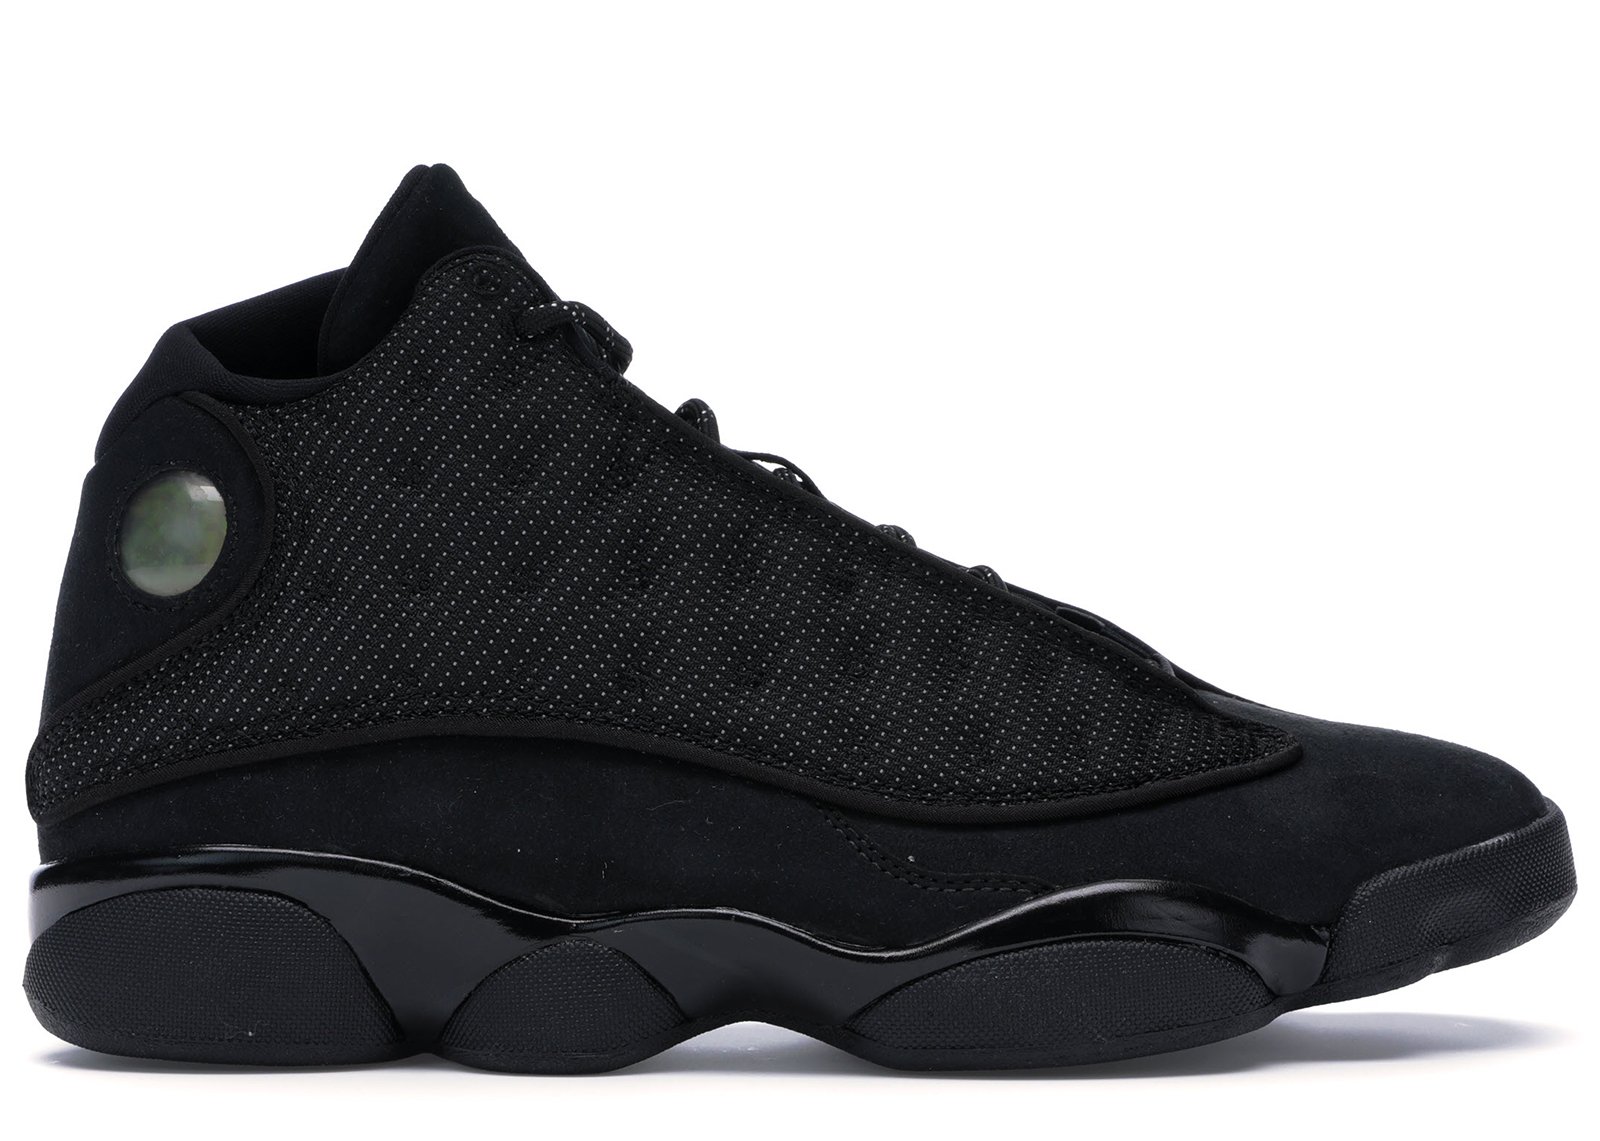 Jordan 13 Retro Black Cat sneakers